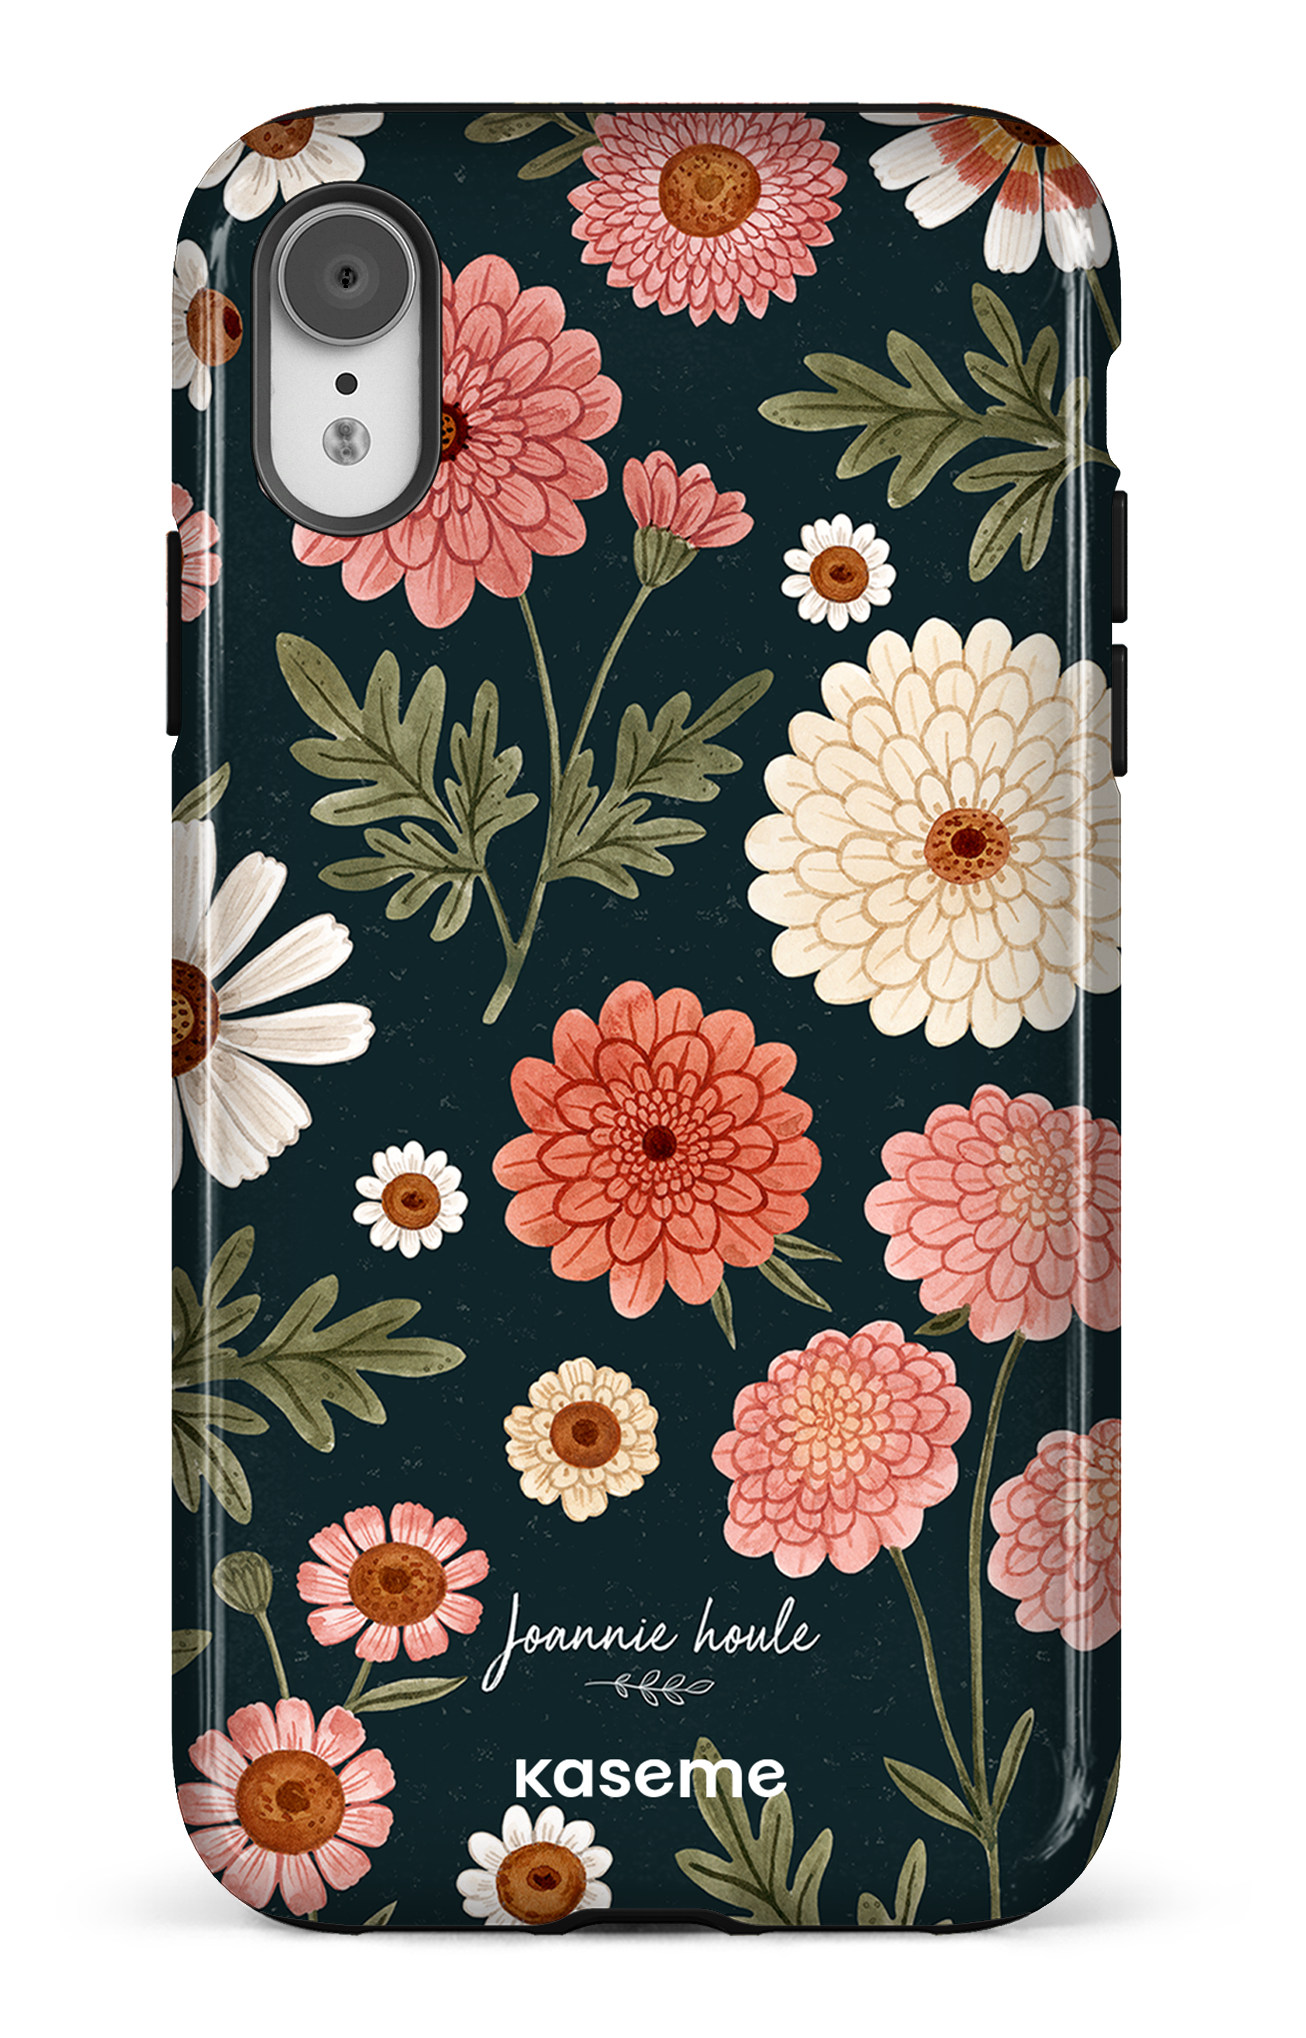 Chrysanthemums by Joannie Houle - iPhone XR